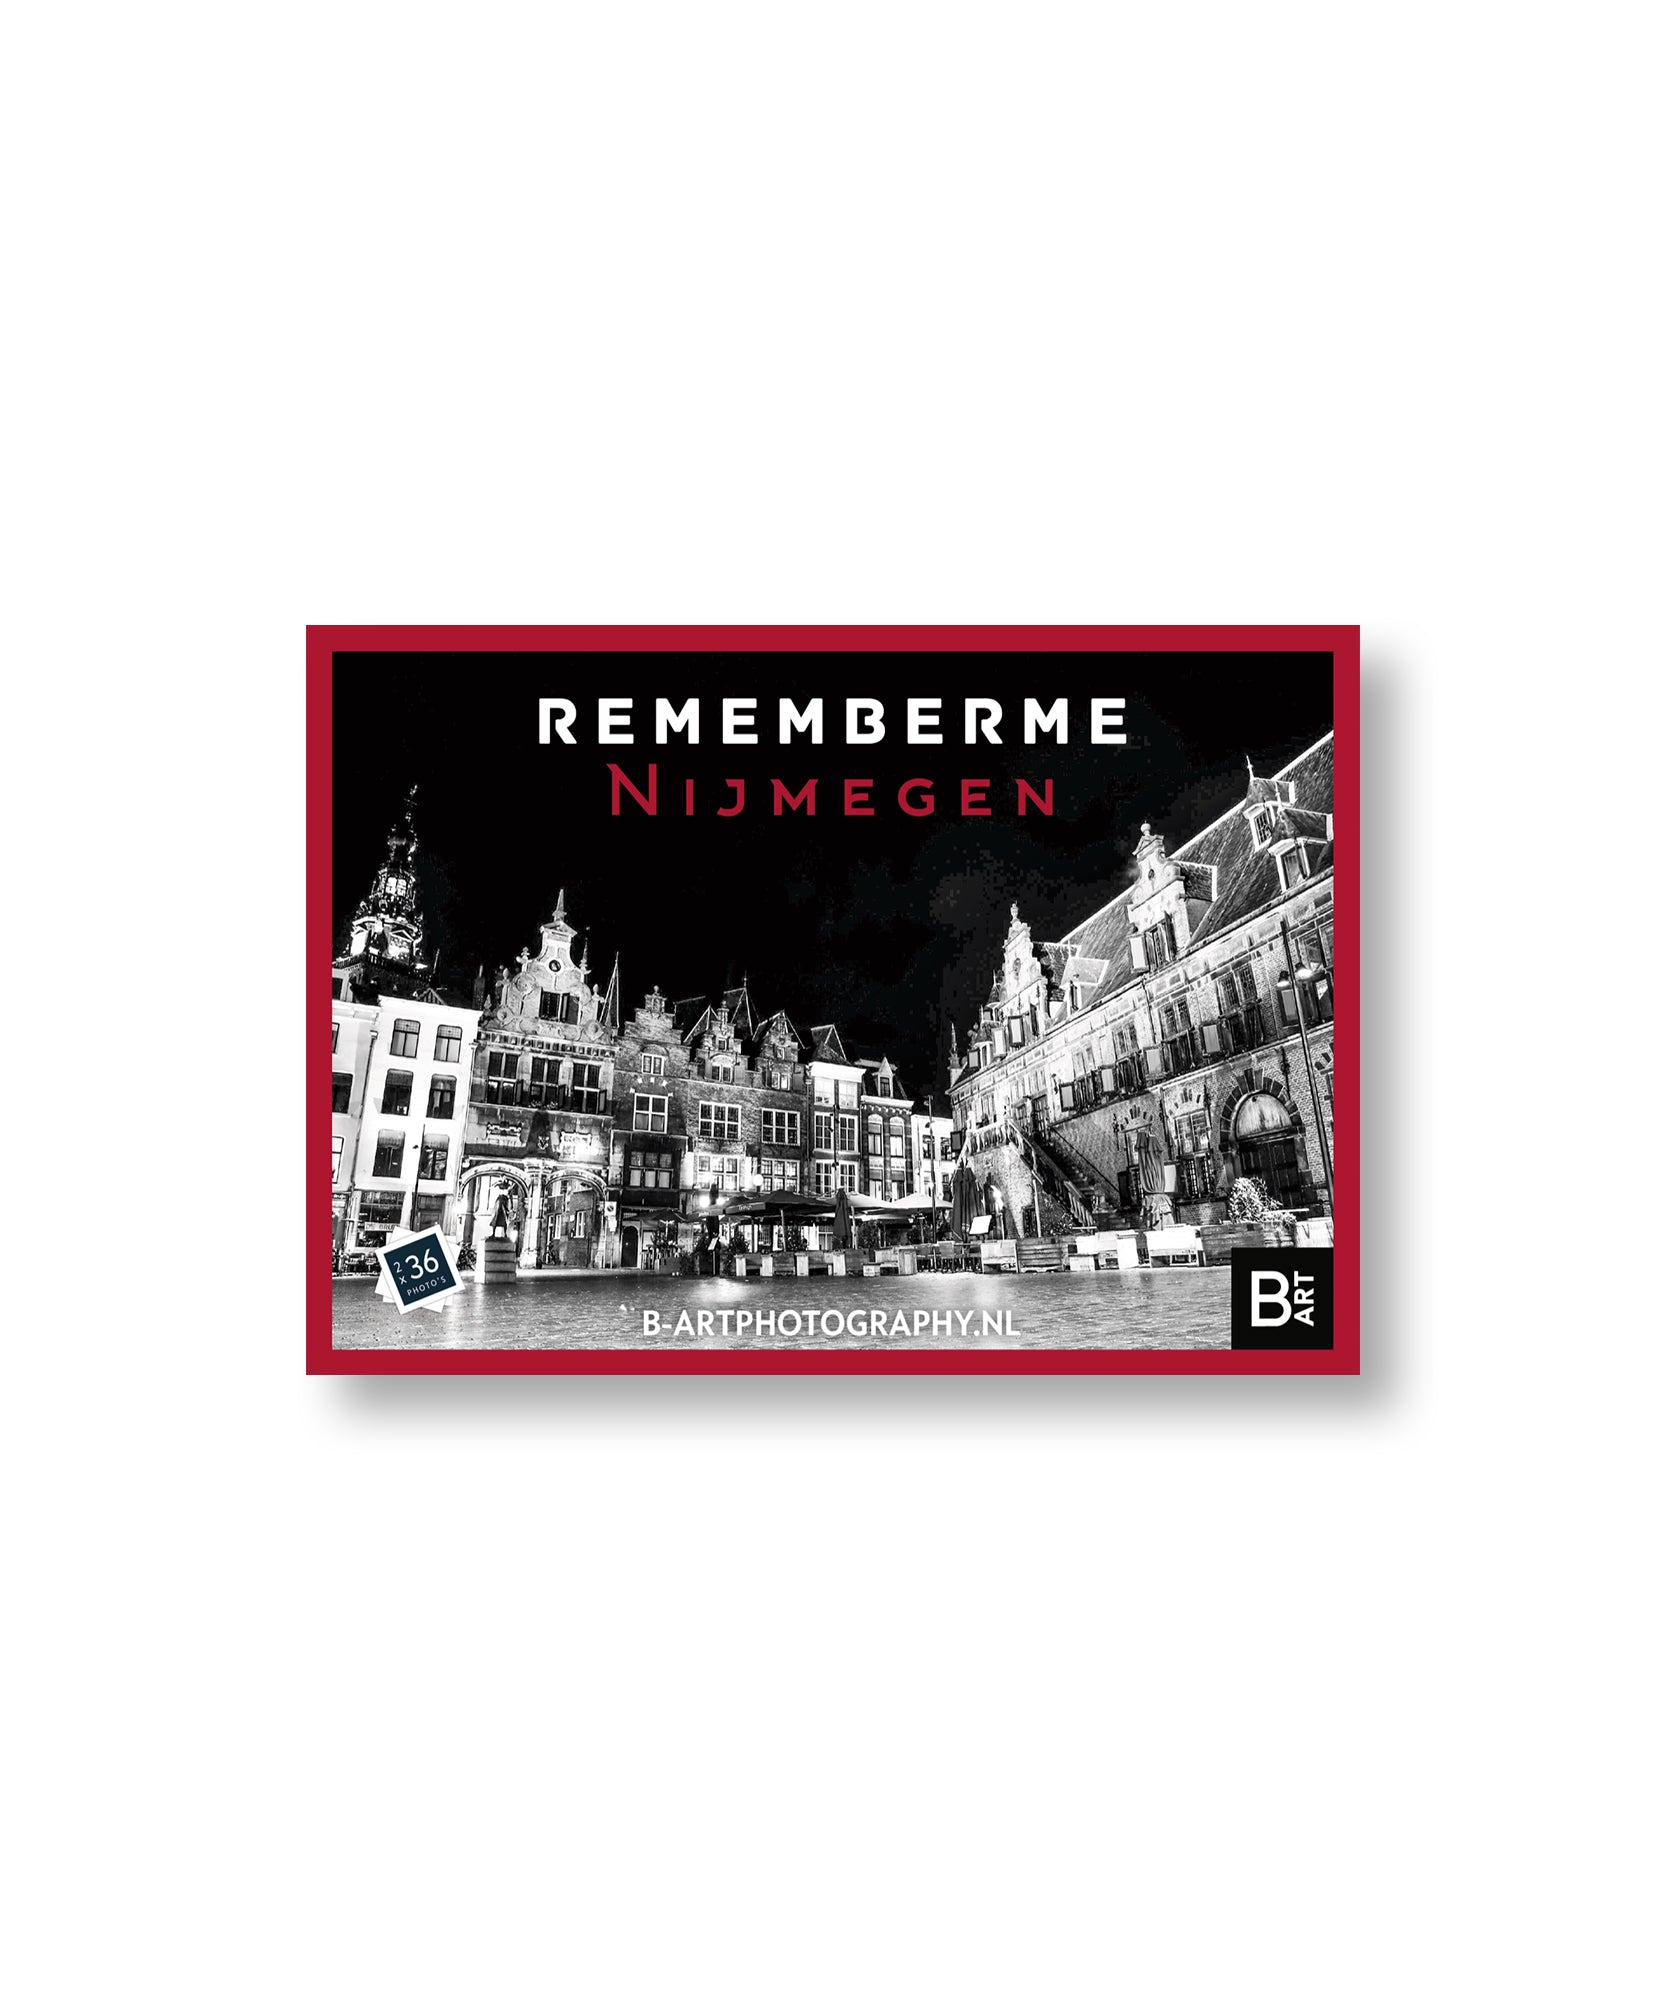 Nijmegen Rememberme spel door B-artphotography